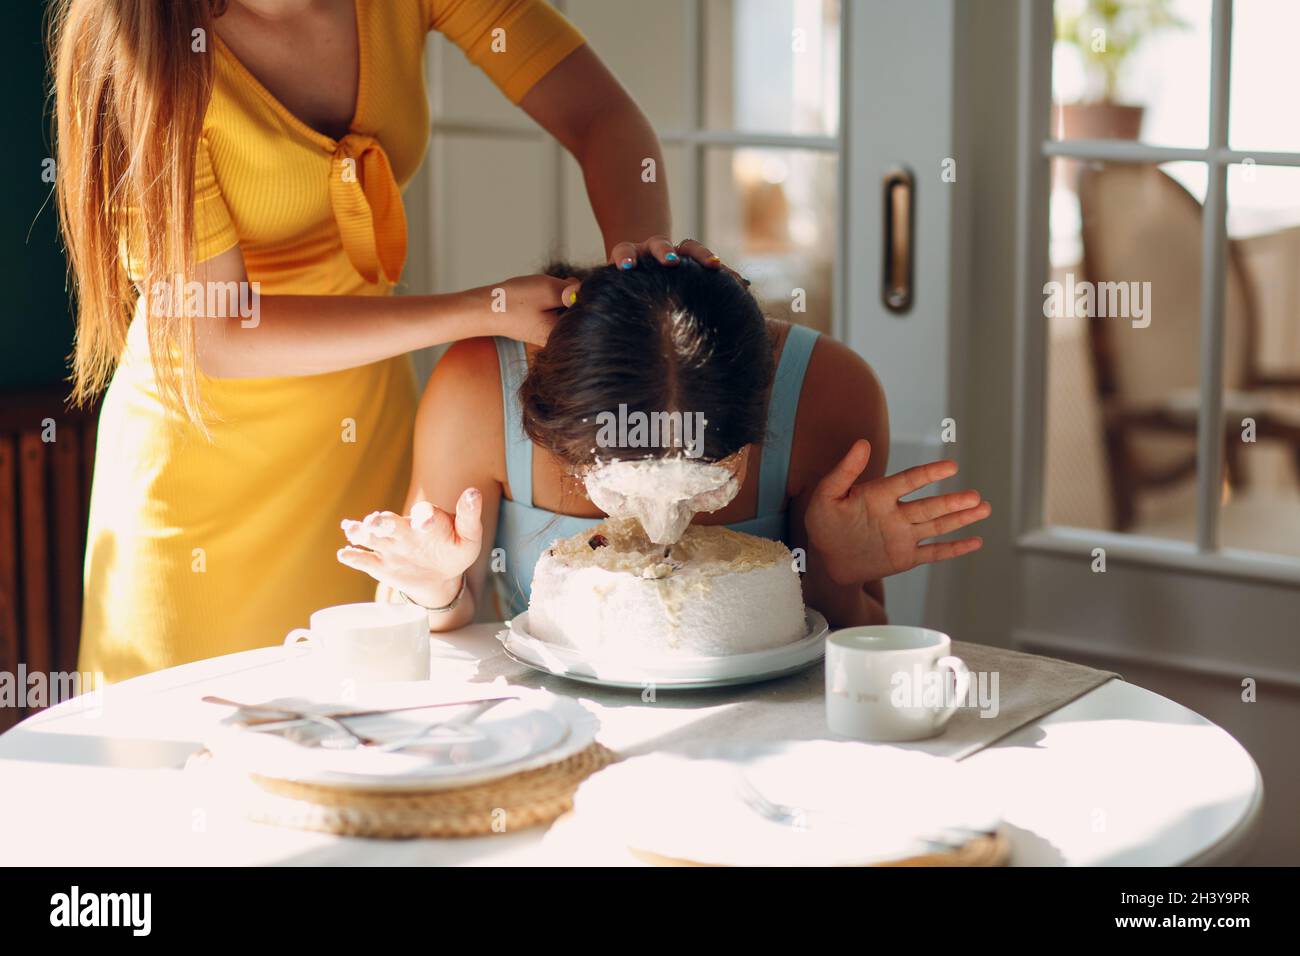 Junge Frau taucht Gesicht in weißen Kuchen mit Sahne. Happy Birthday  Konzept Stockfotografie - Alamy